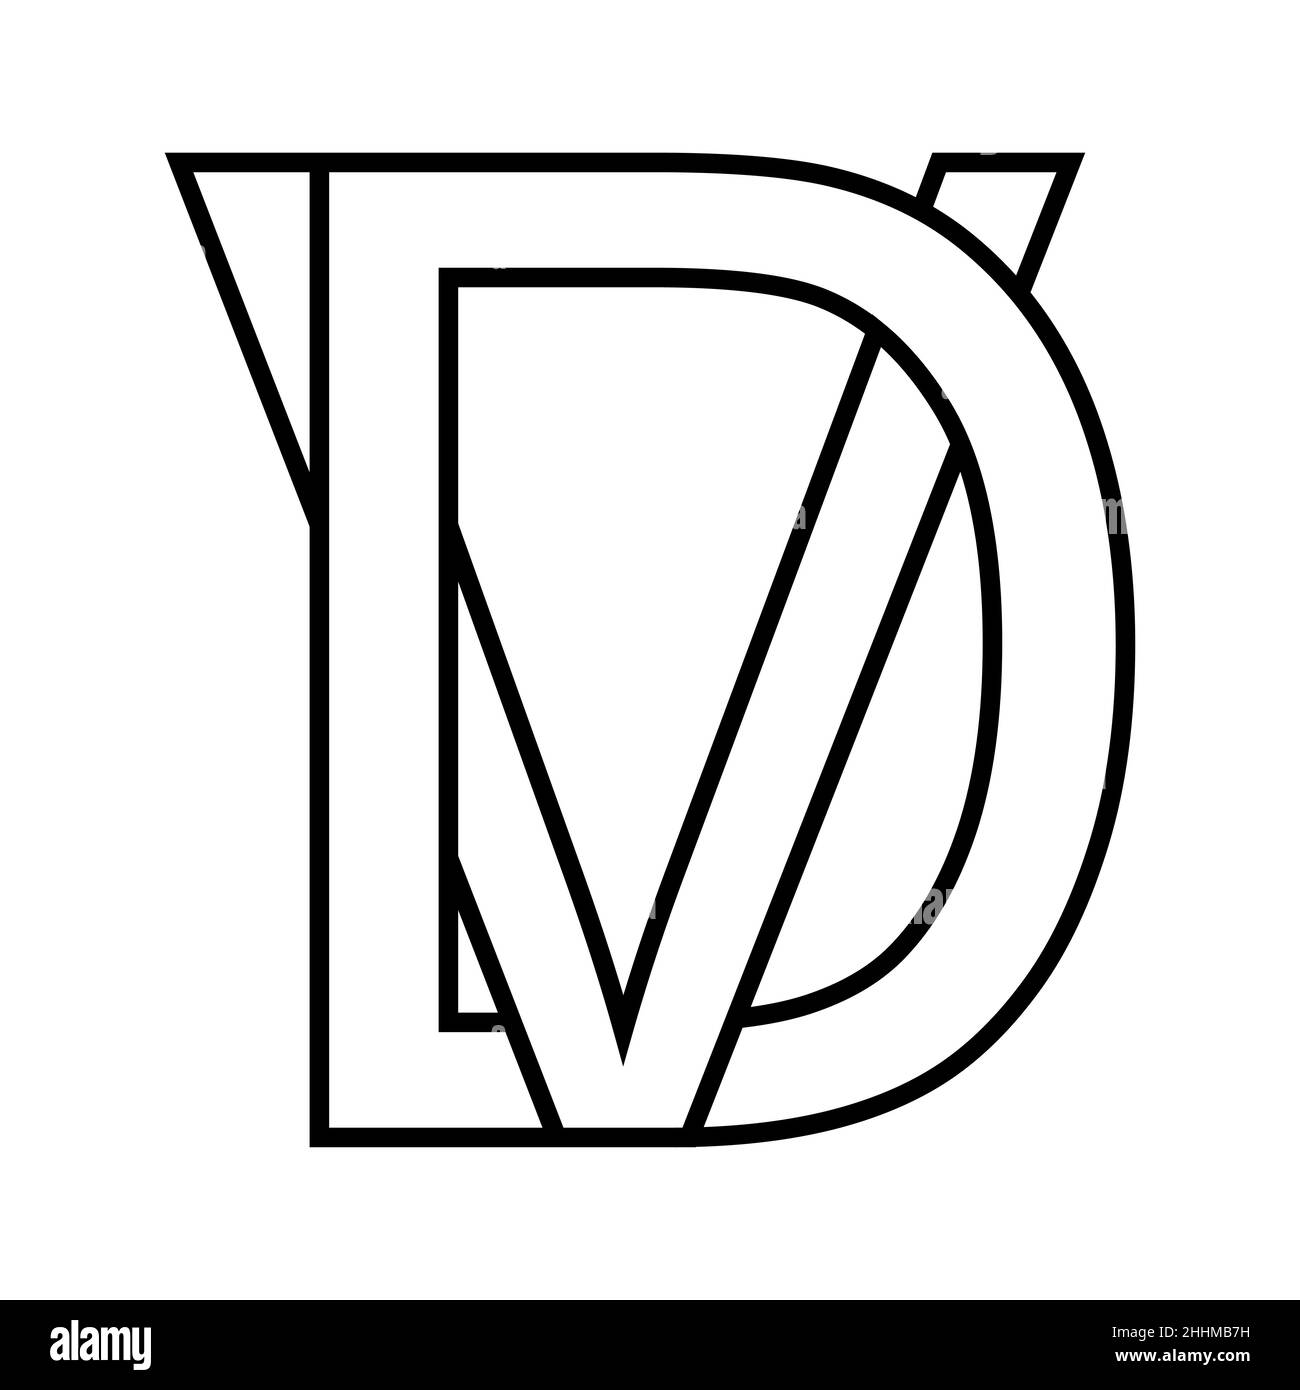 Logo sign, dv vd, icon nft dv interlaced letters d v Stock Vector